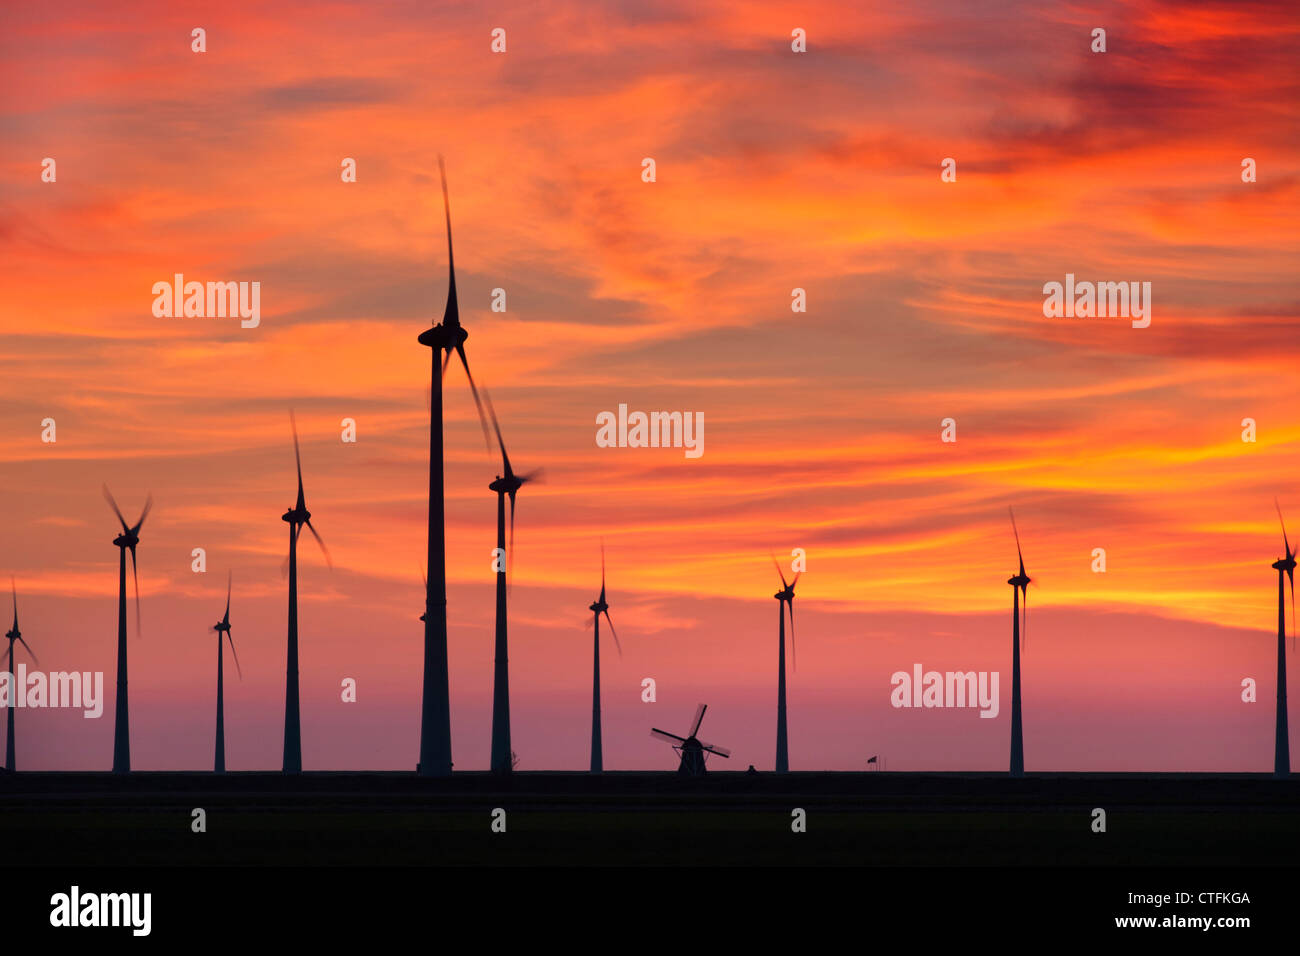 Emsmündung, Eemshaven, Windkraftanlagen und traditionelle Windmühle. Sonnenuntergang. Stockfoto